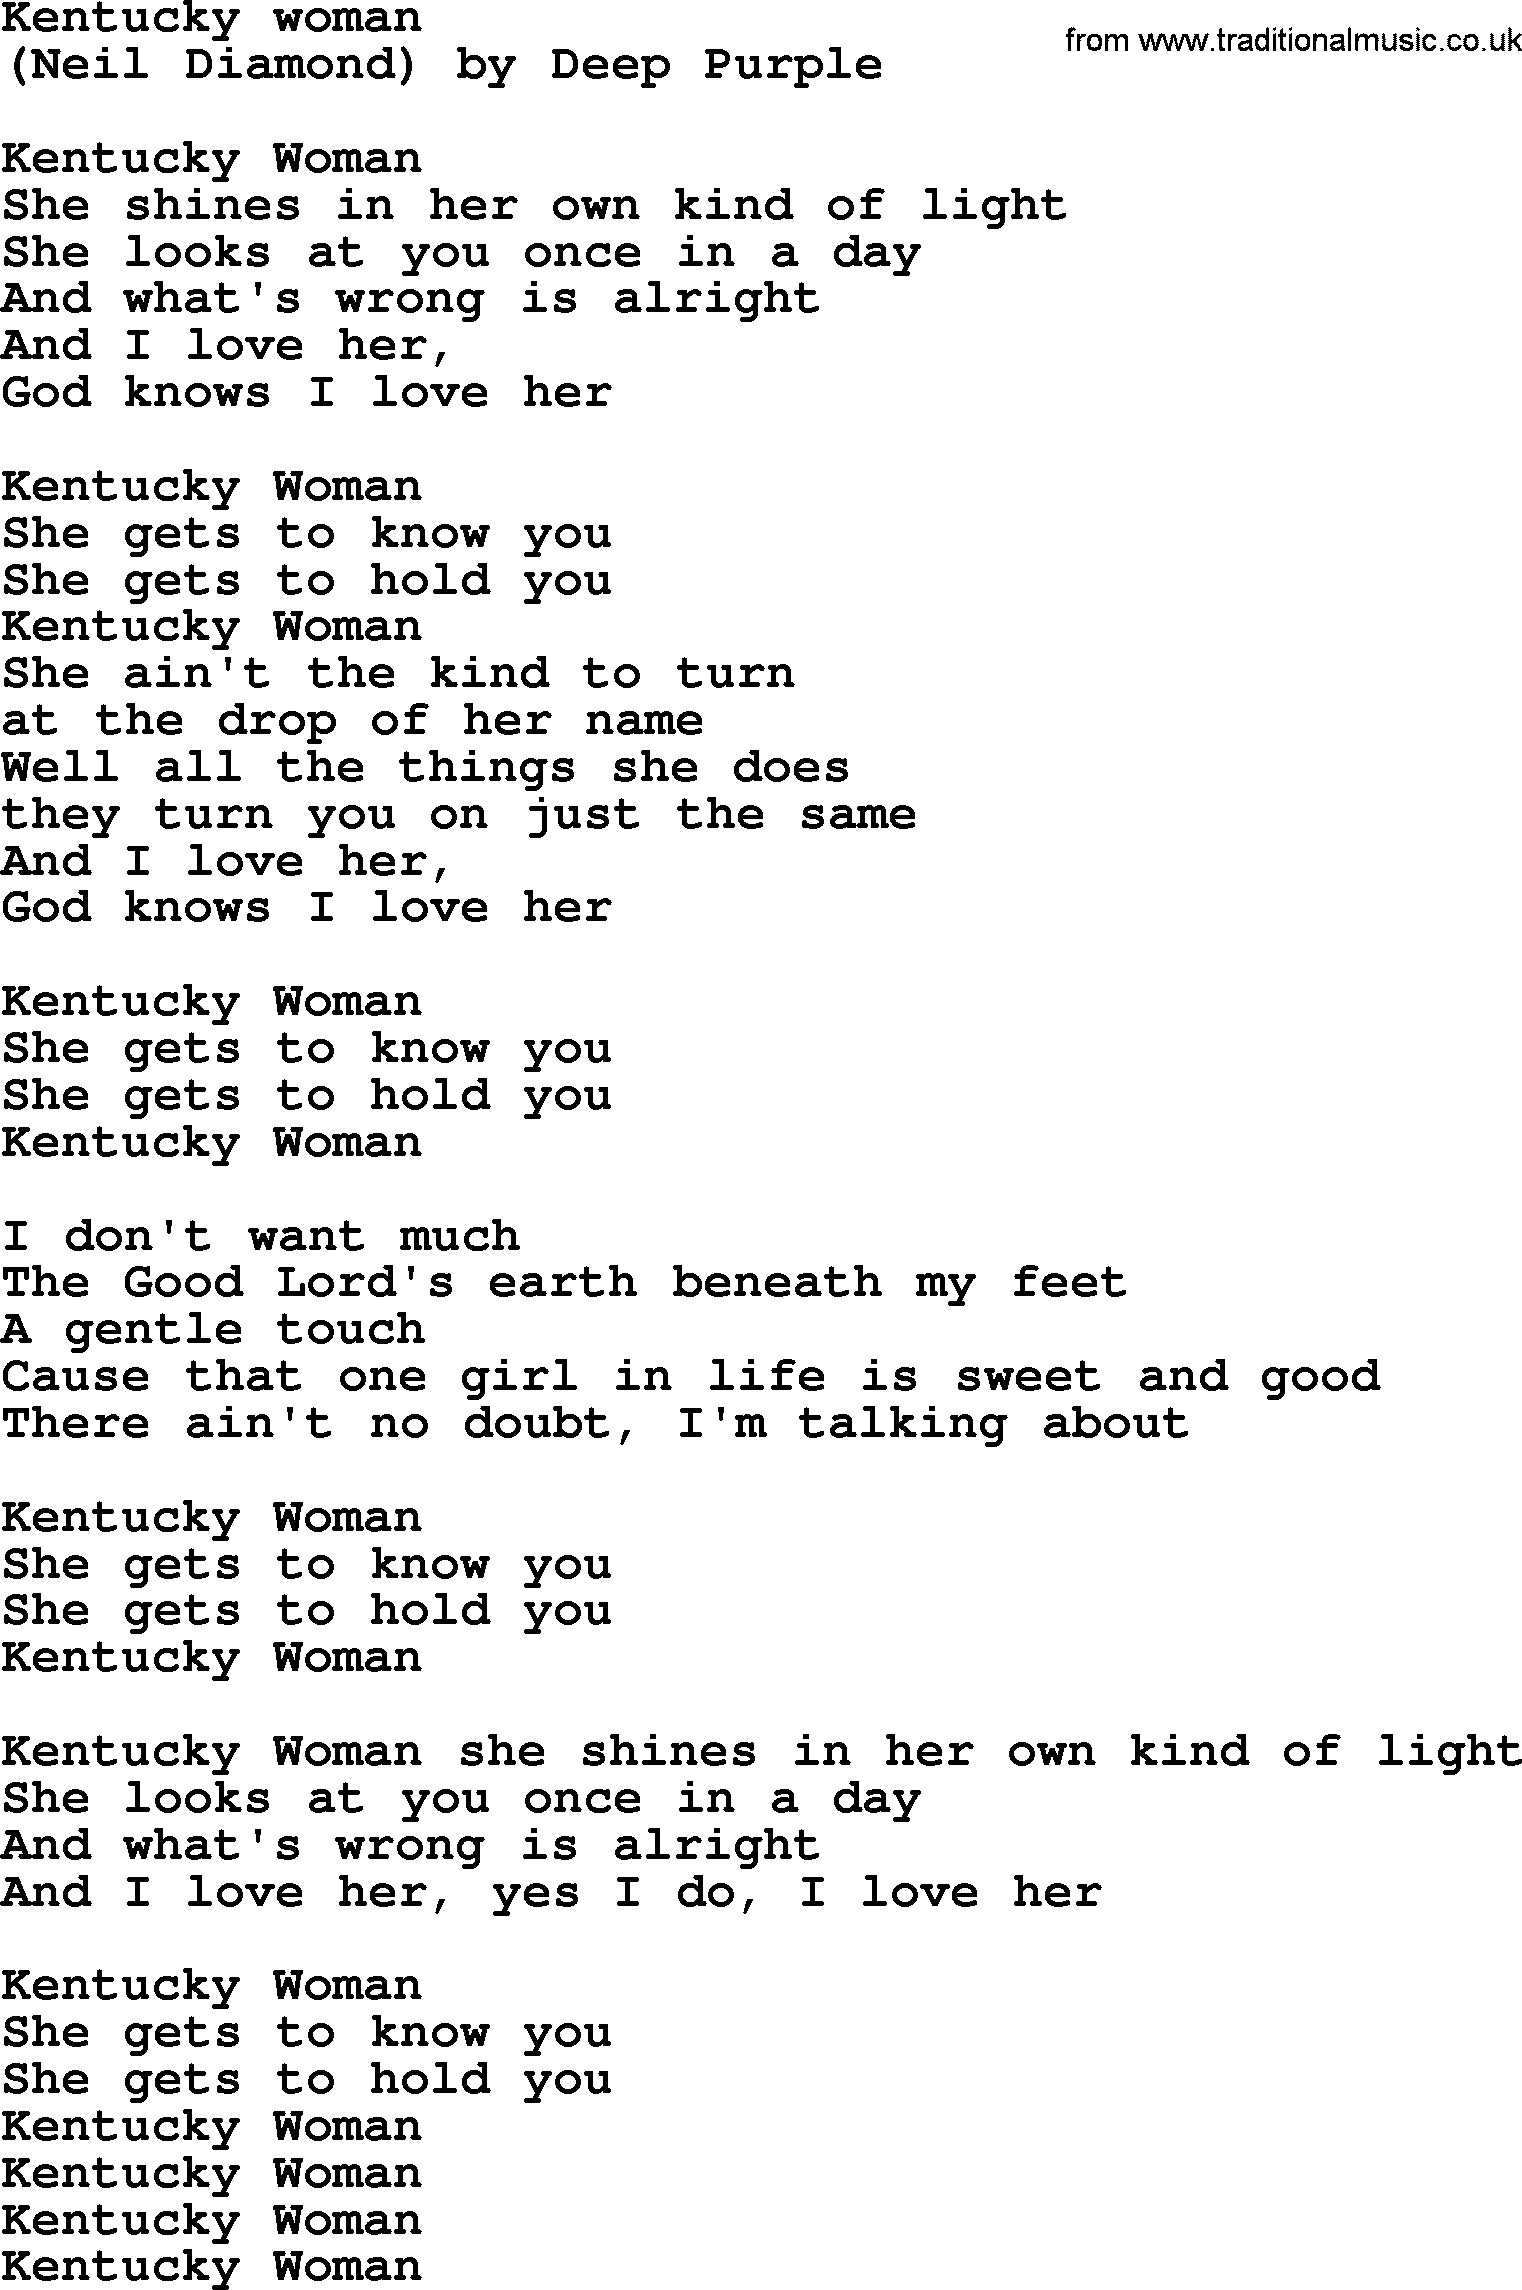 Bruce Springsteen song: Kentucky Woman lyrics